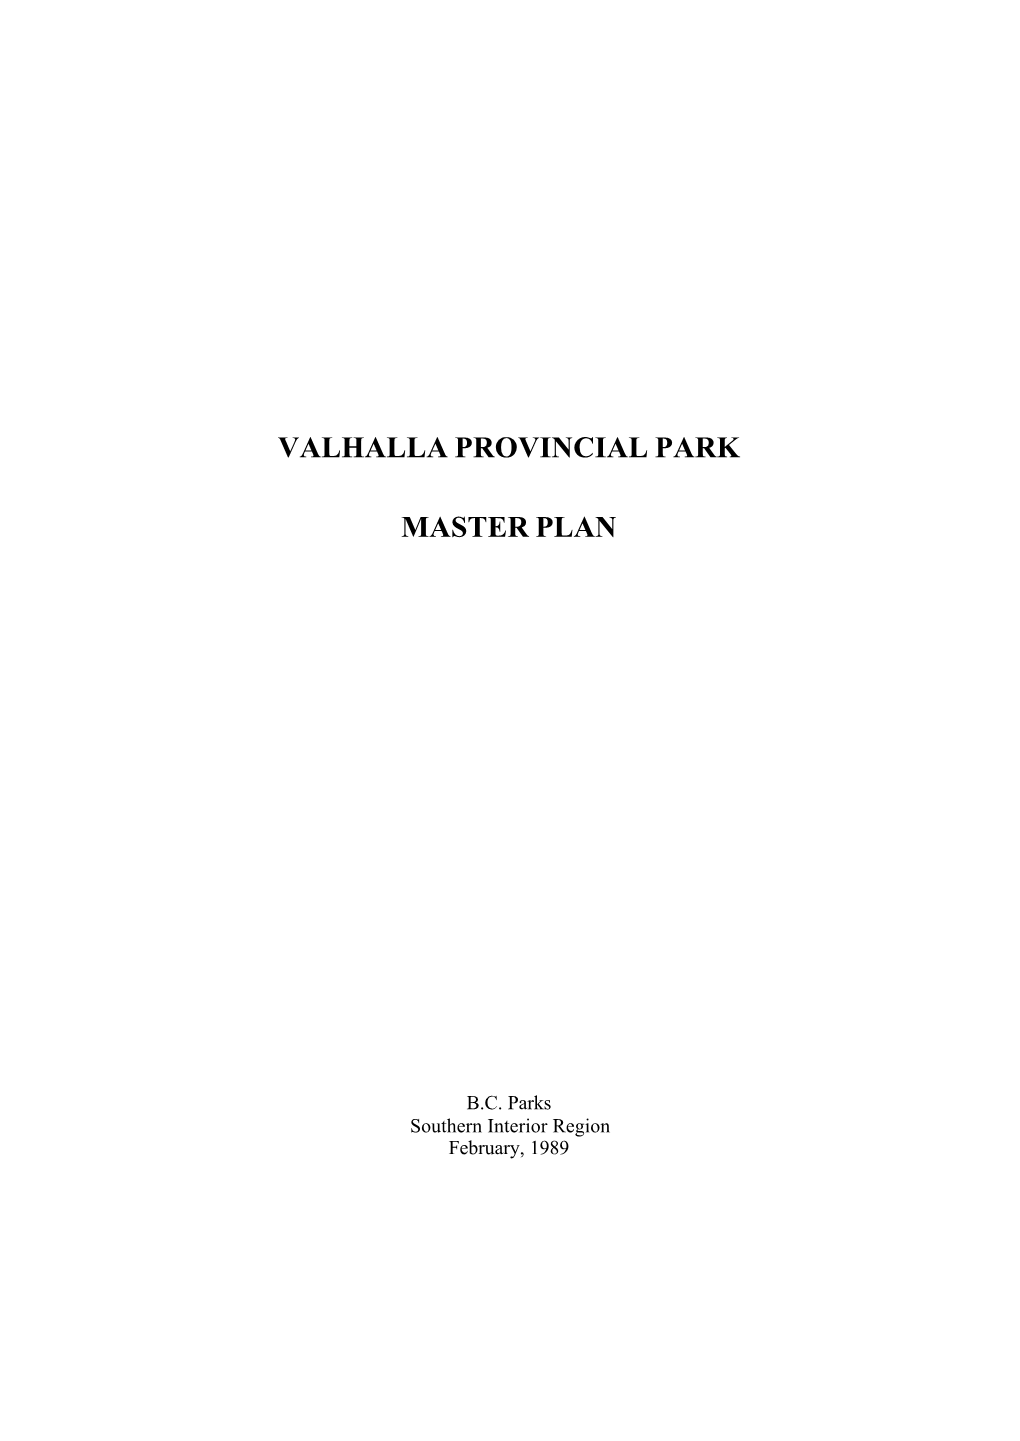 Valhalla Provincial Park Master Plan